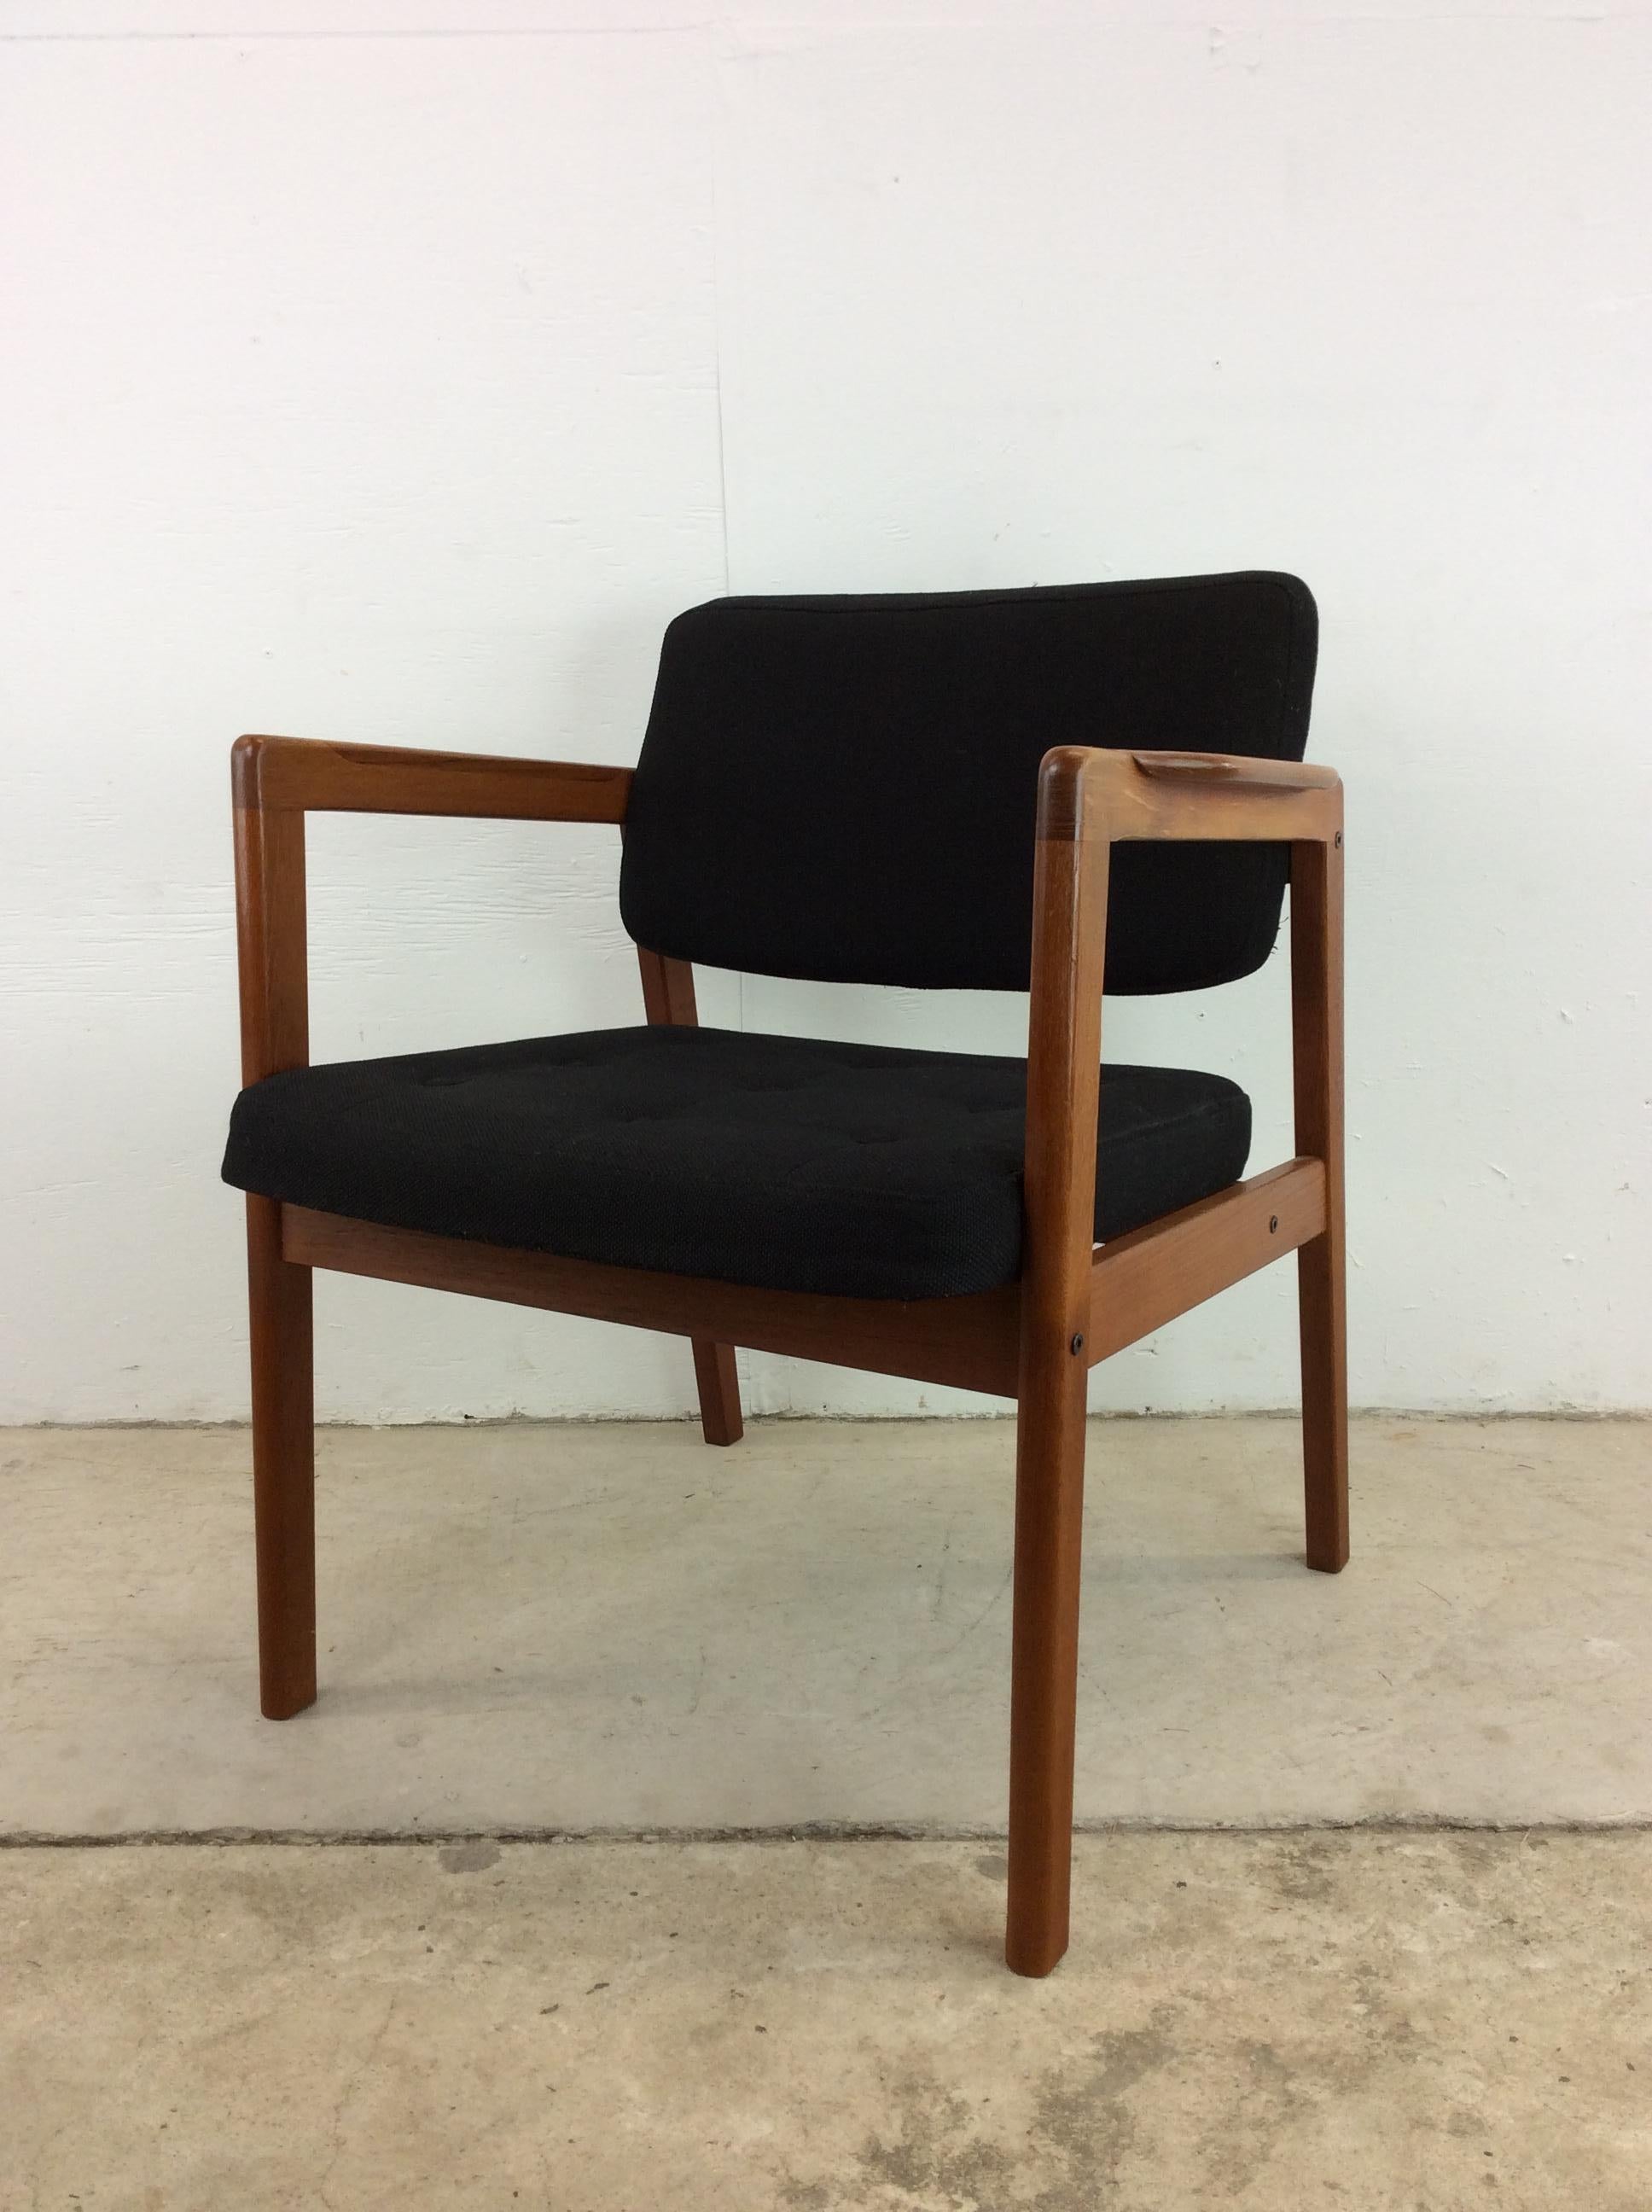 Ce fauteuil moderne danois est doté d'une structure en teck massif avec finition d'origine, d'un revêtement noir vintage avec dossier tufté et de grands pieds fuselés.

Le mobilier de bureau moderne danois est disponible séparément.

Dimensions :